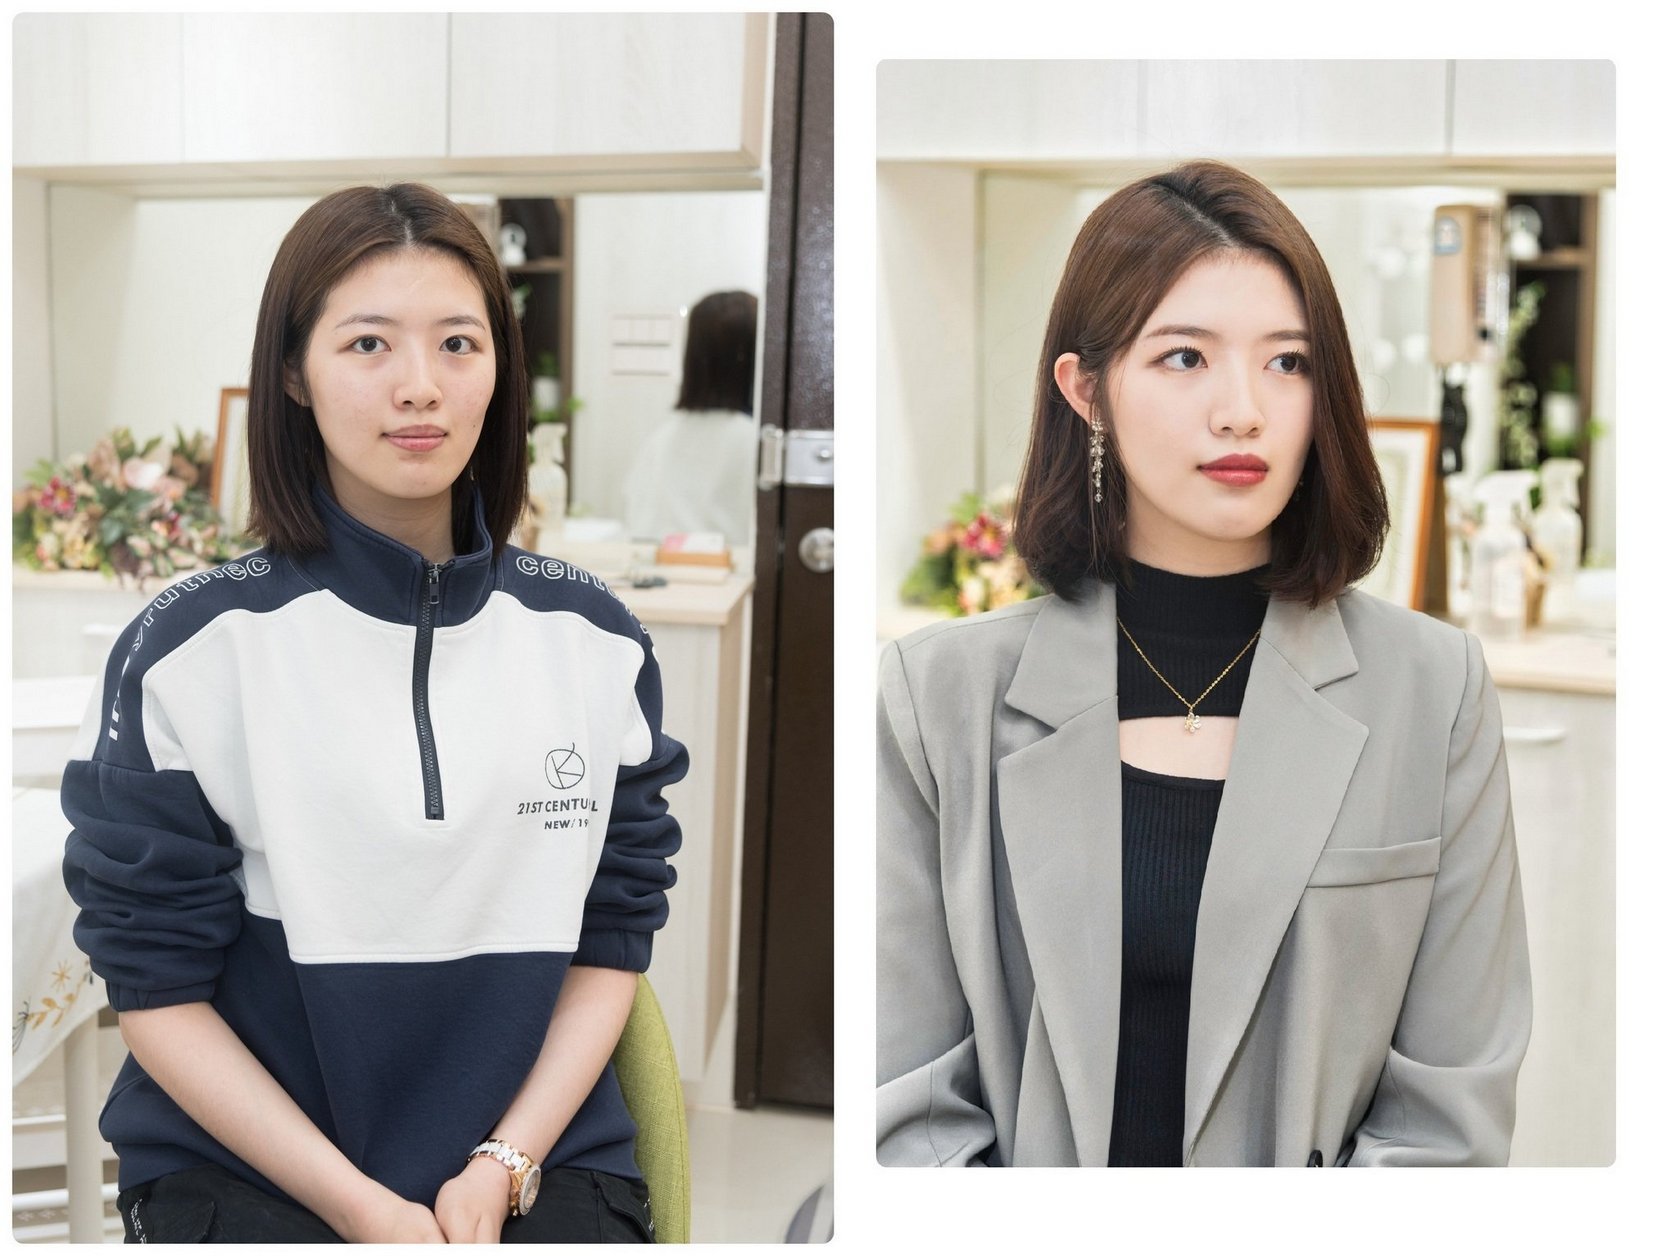 韓式化妝服務 黑暗榮耀、代理公司女主角 上班妝感設計